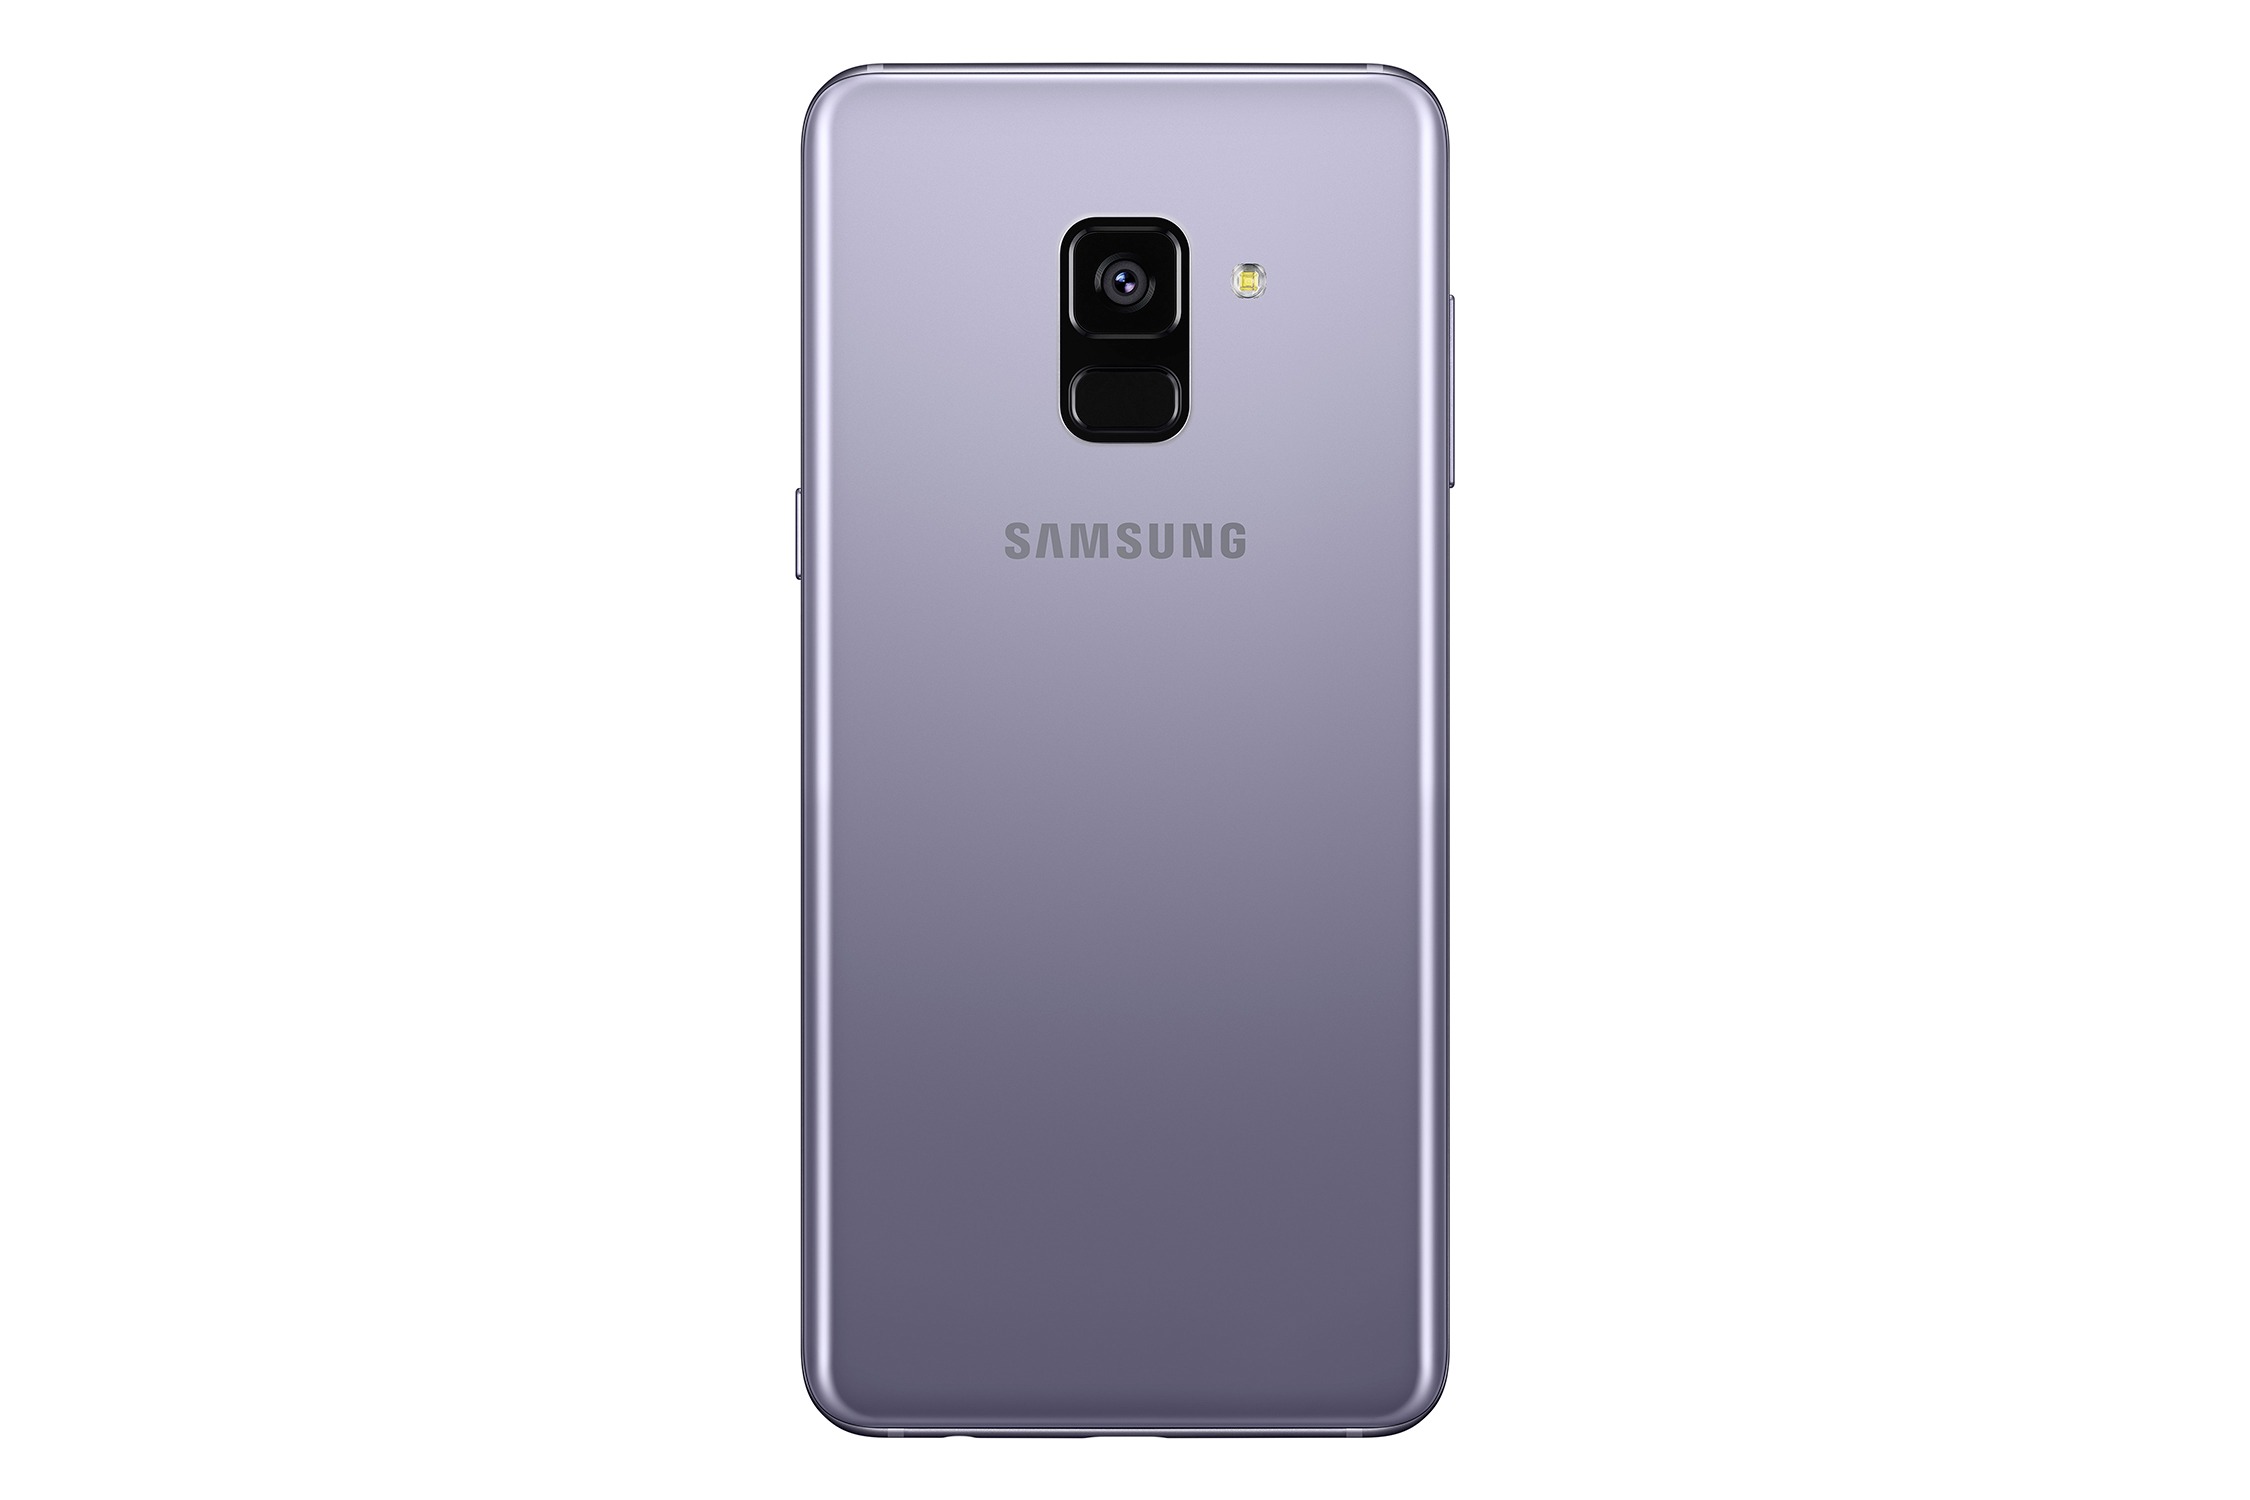 Samsung Galaxy A8, precio en tiendas, Movistar y Vodafone 5